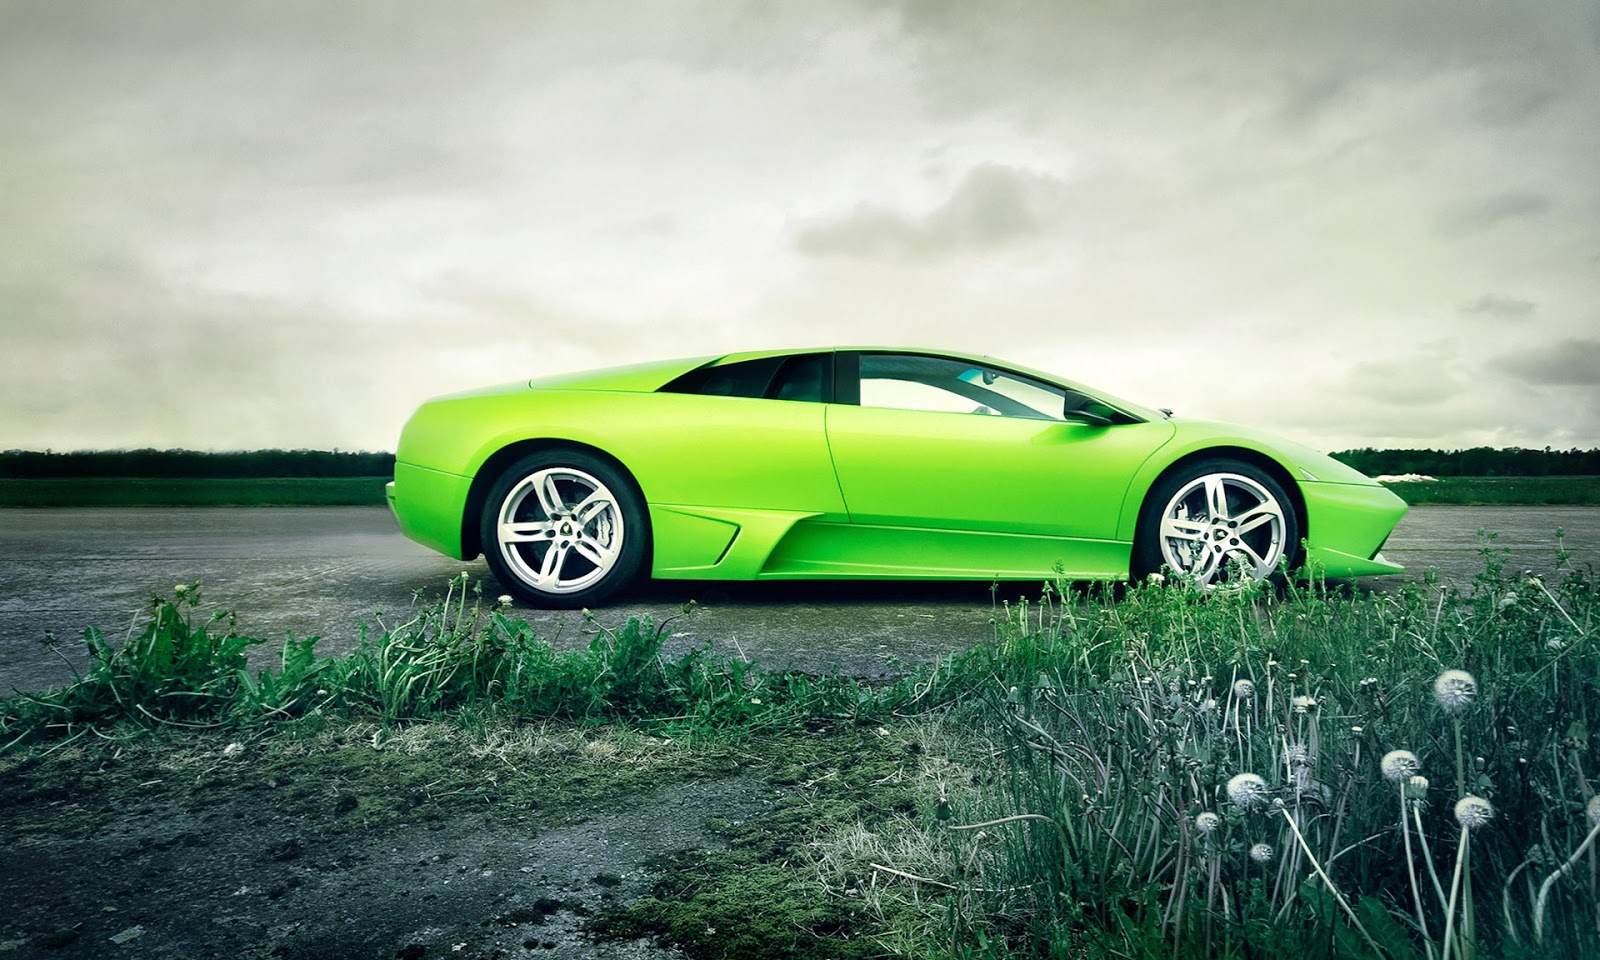 Lime Green Lamborghini Cars